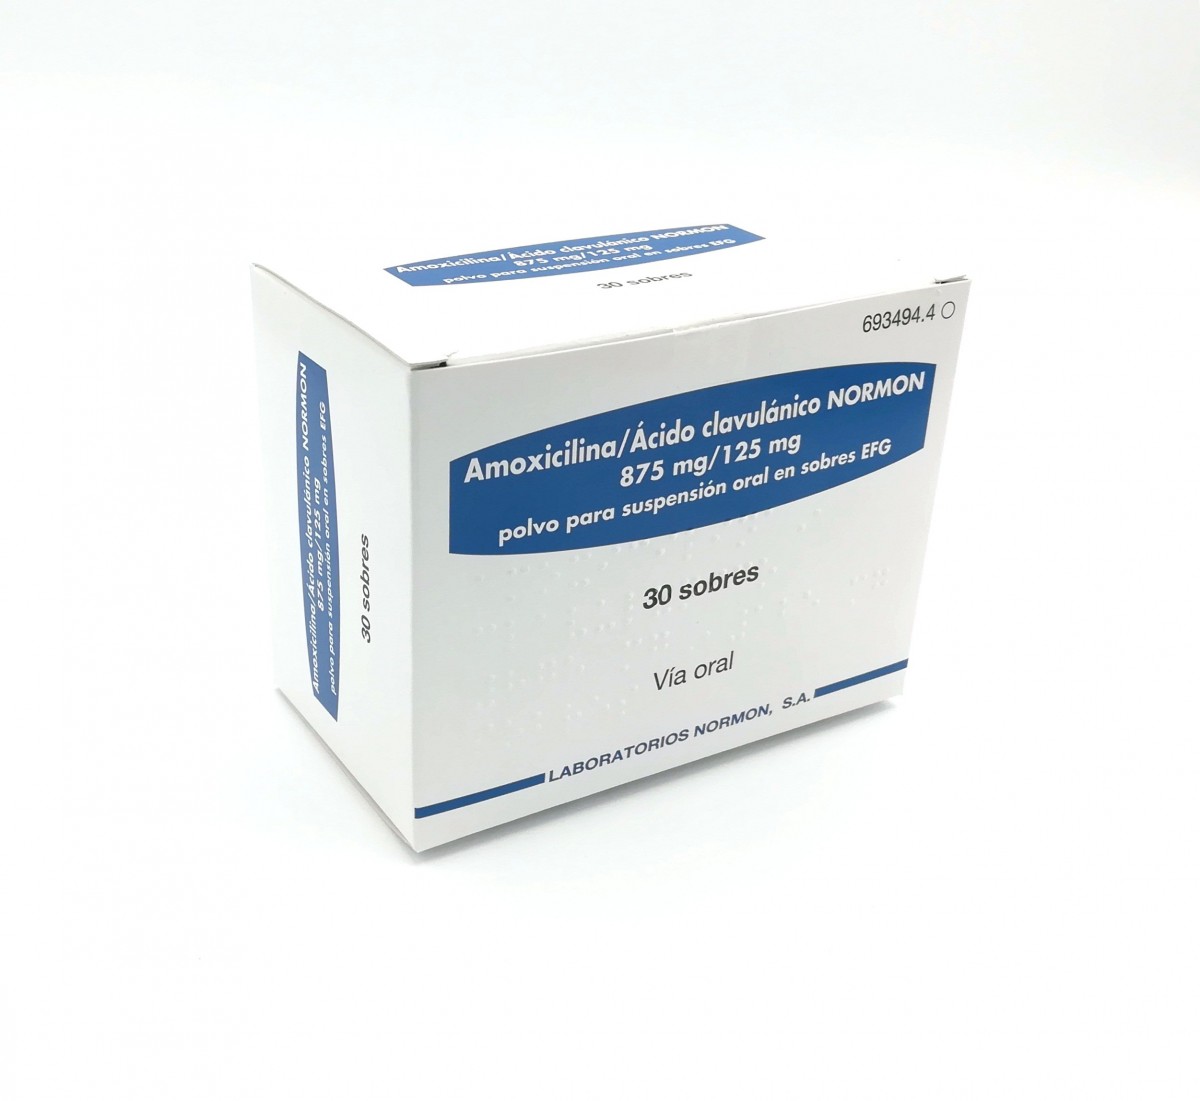 AMOXICILINA/ACIDO CLAVULANICO NORMON 875 mg/125 mg POLVO PARA SUSPENSION ORAL EN SOBRES EFG , 24 sobres fotografía del envase.